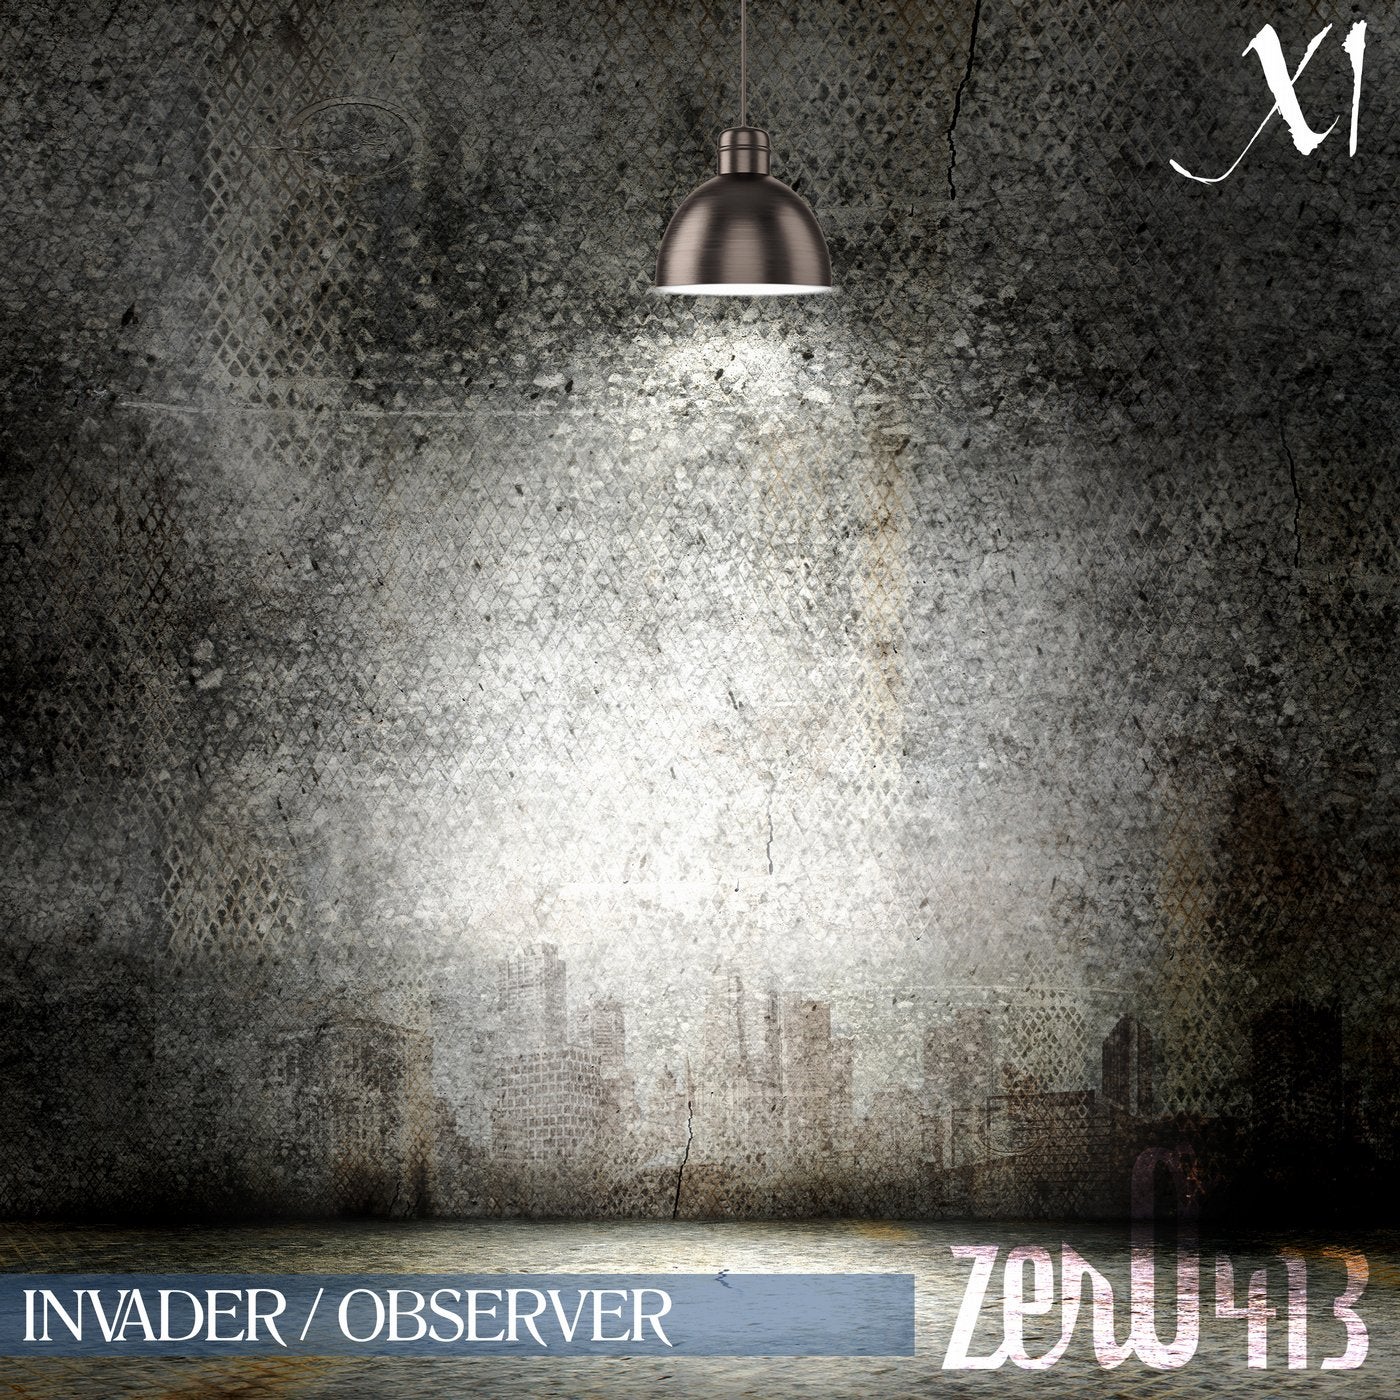 Invader / Observer